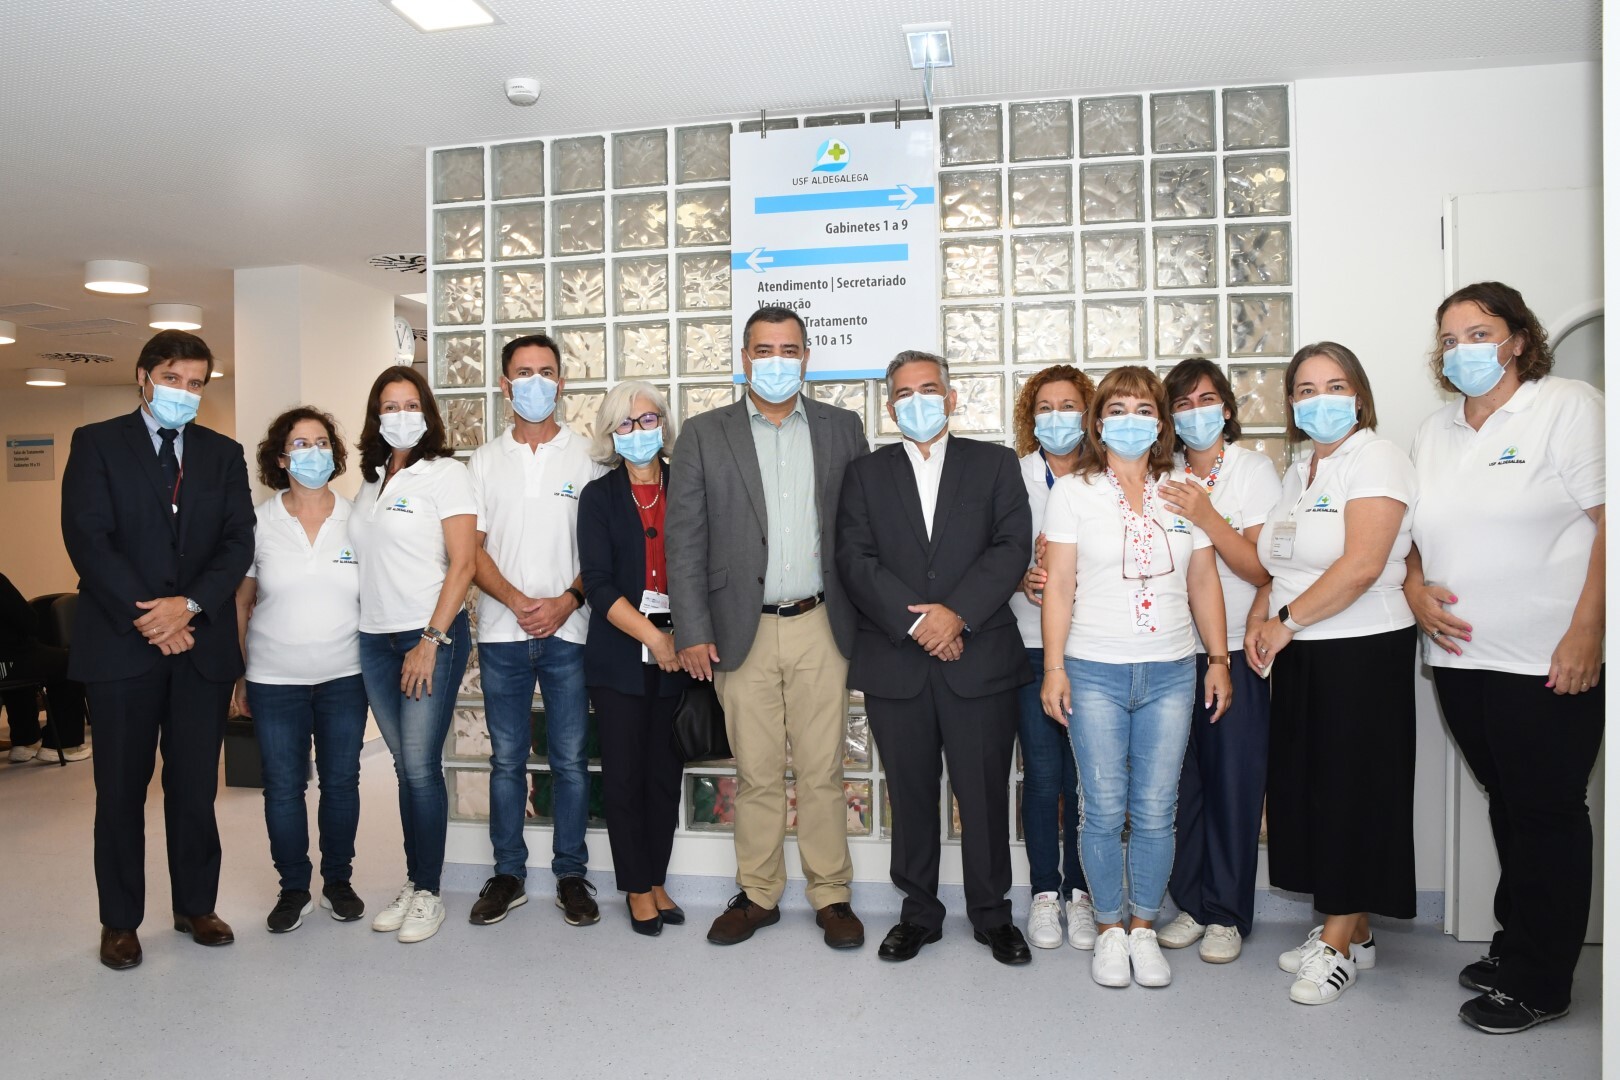 Nova Unidade de Saúde Familiar Aldegalega abriu portas